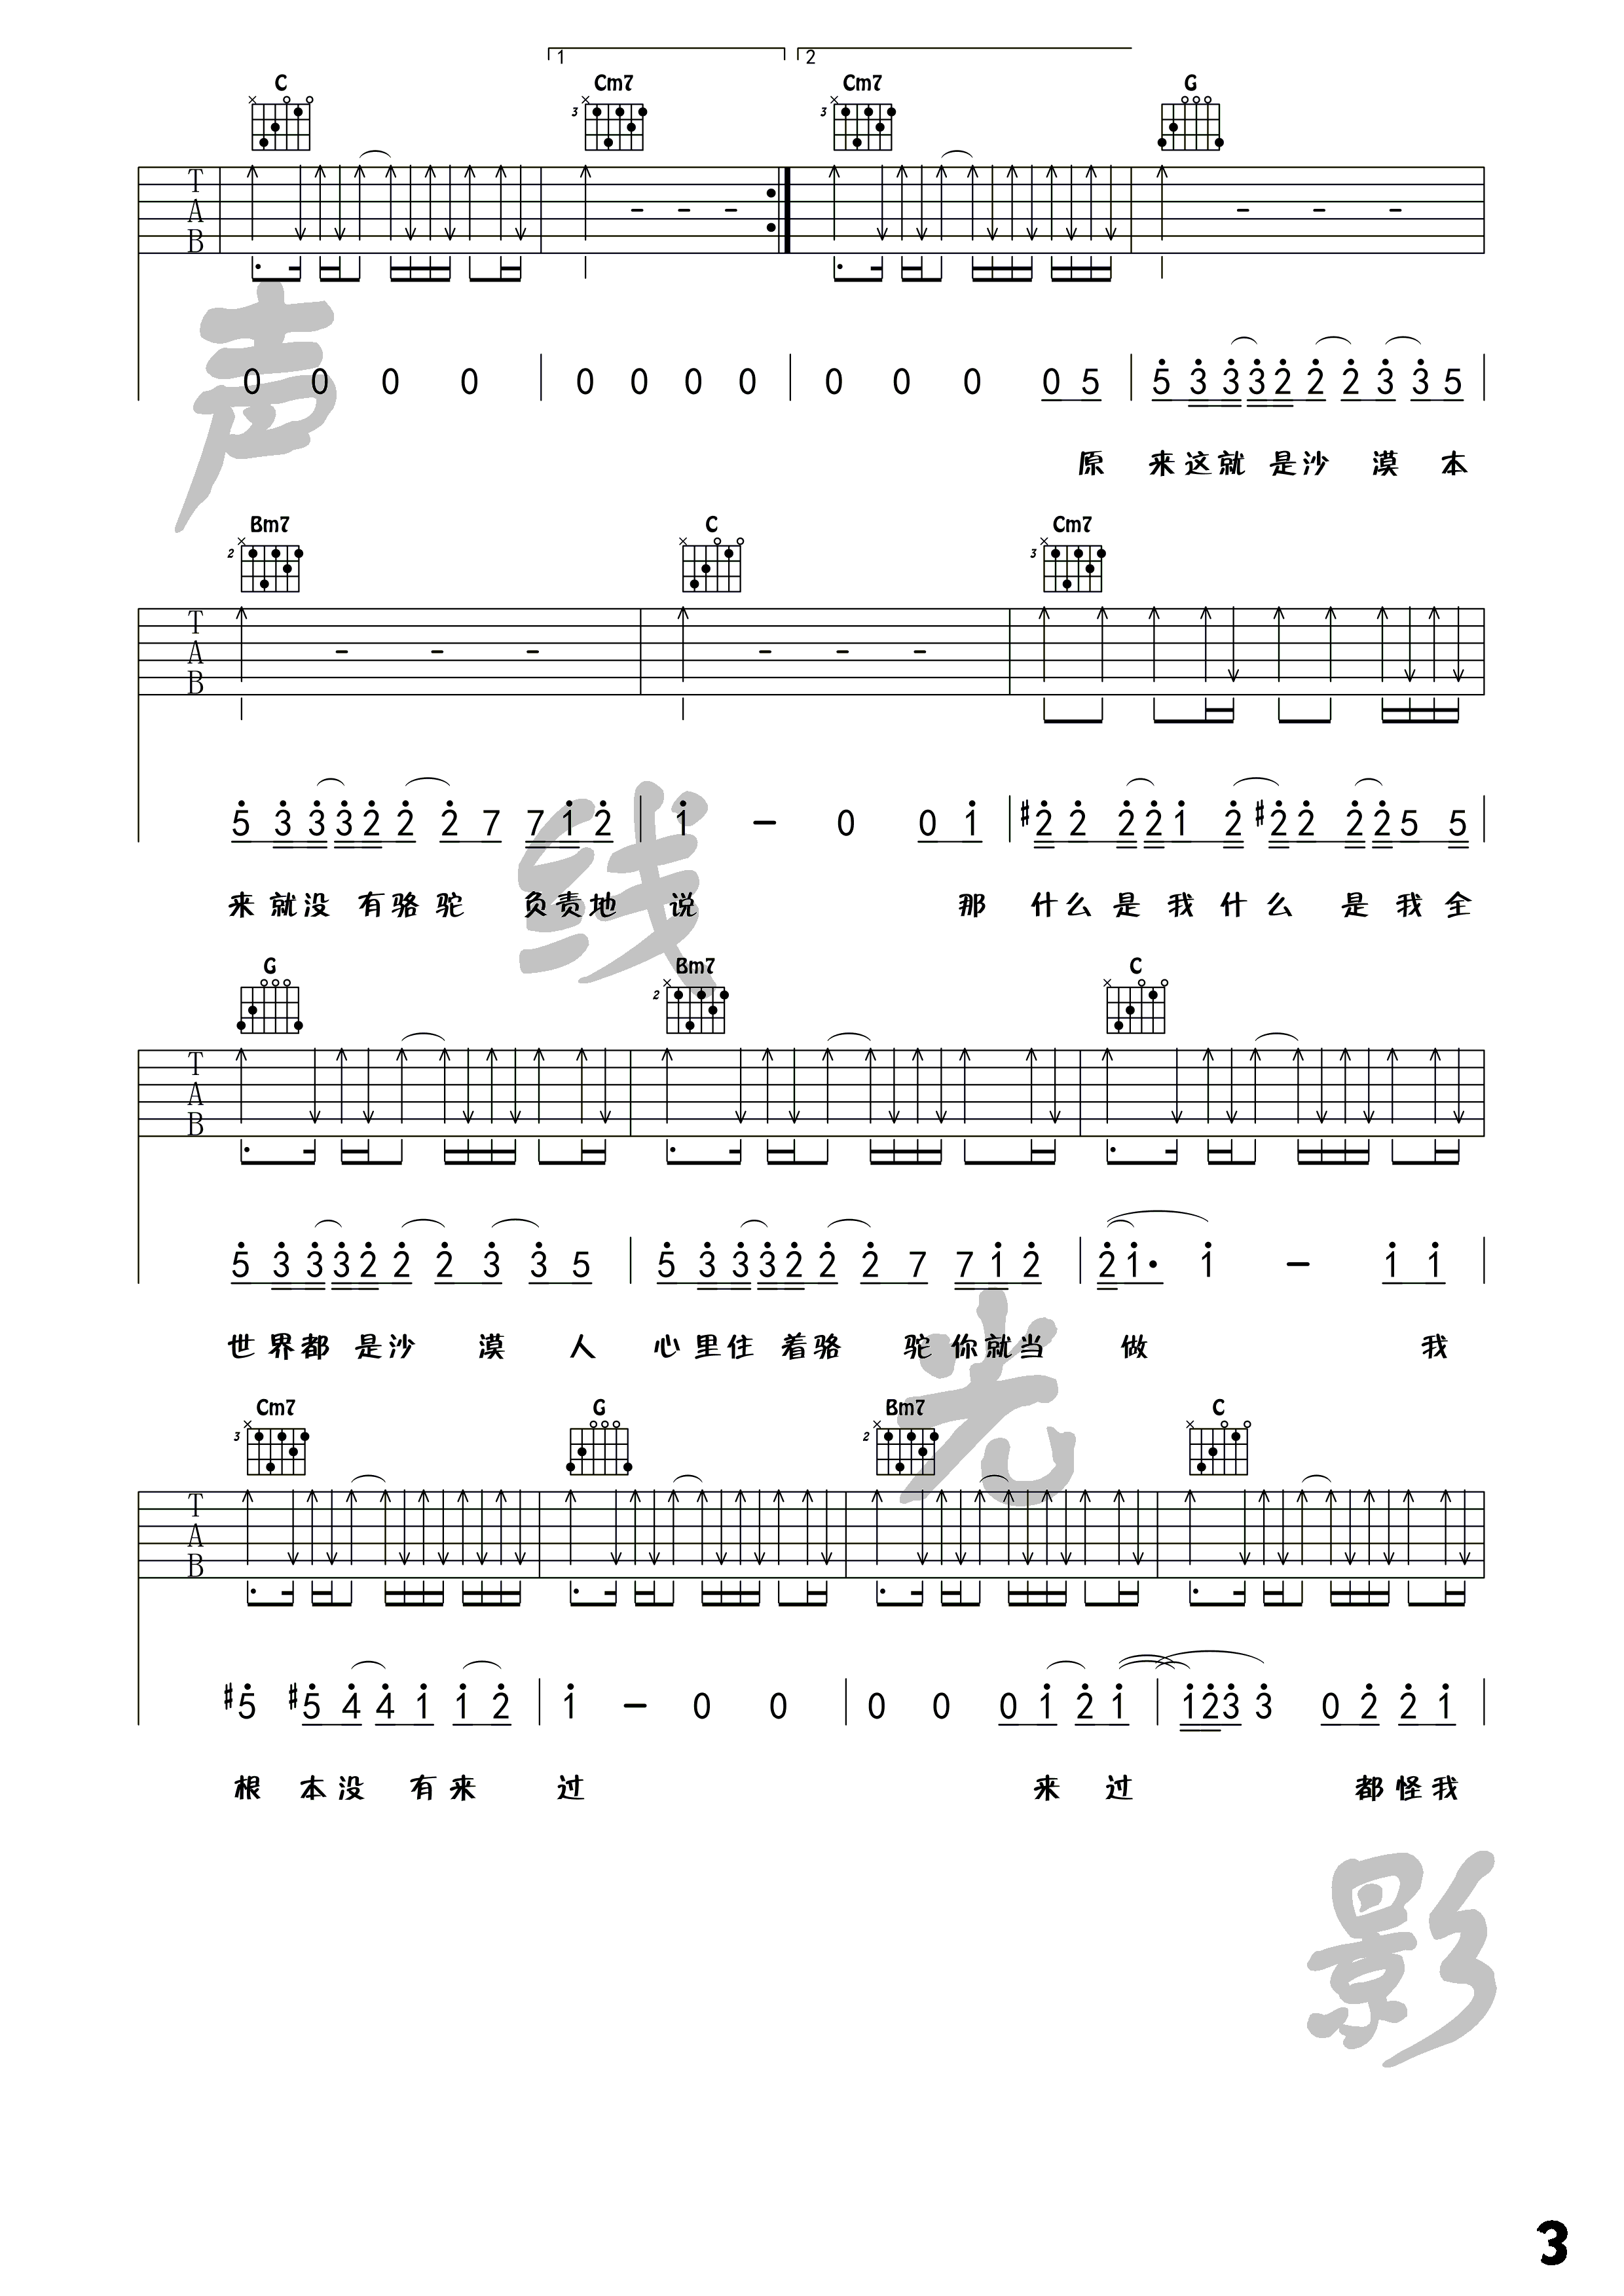 骆驼(吉他谱第十七期)吉他谱(图片谱,教学,弹唱)_薛之谦_骆驼_3.png